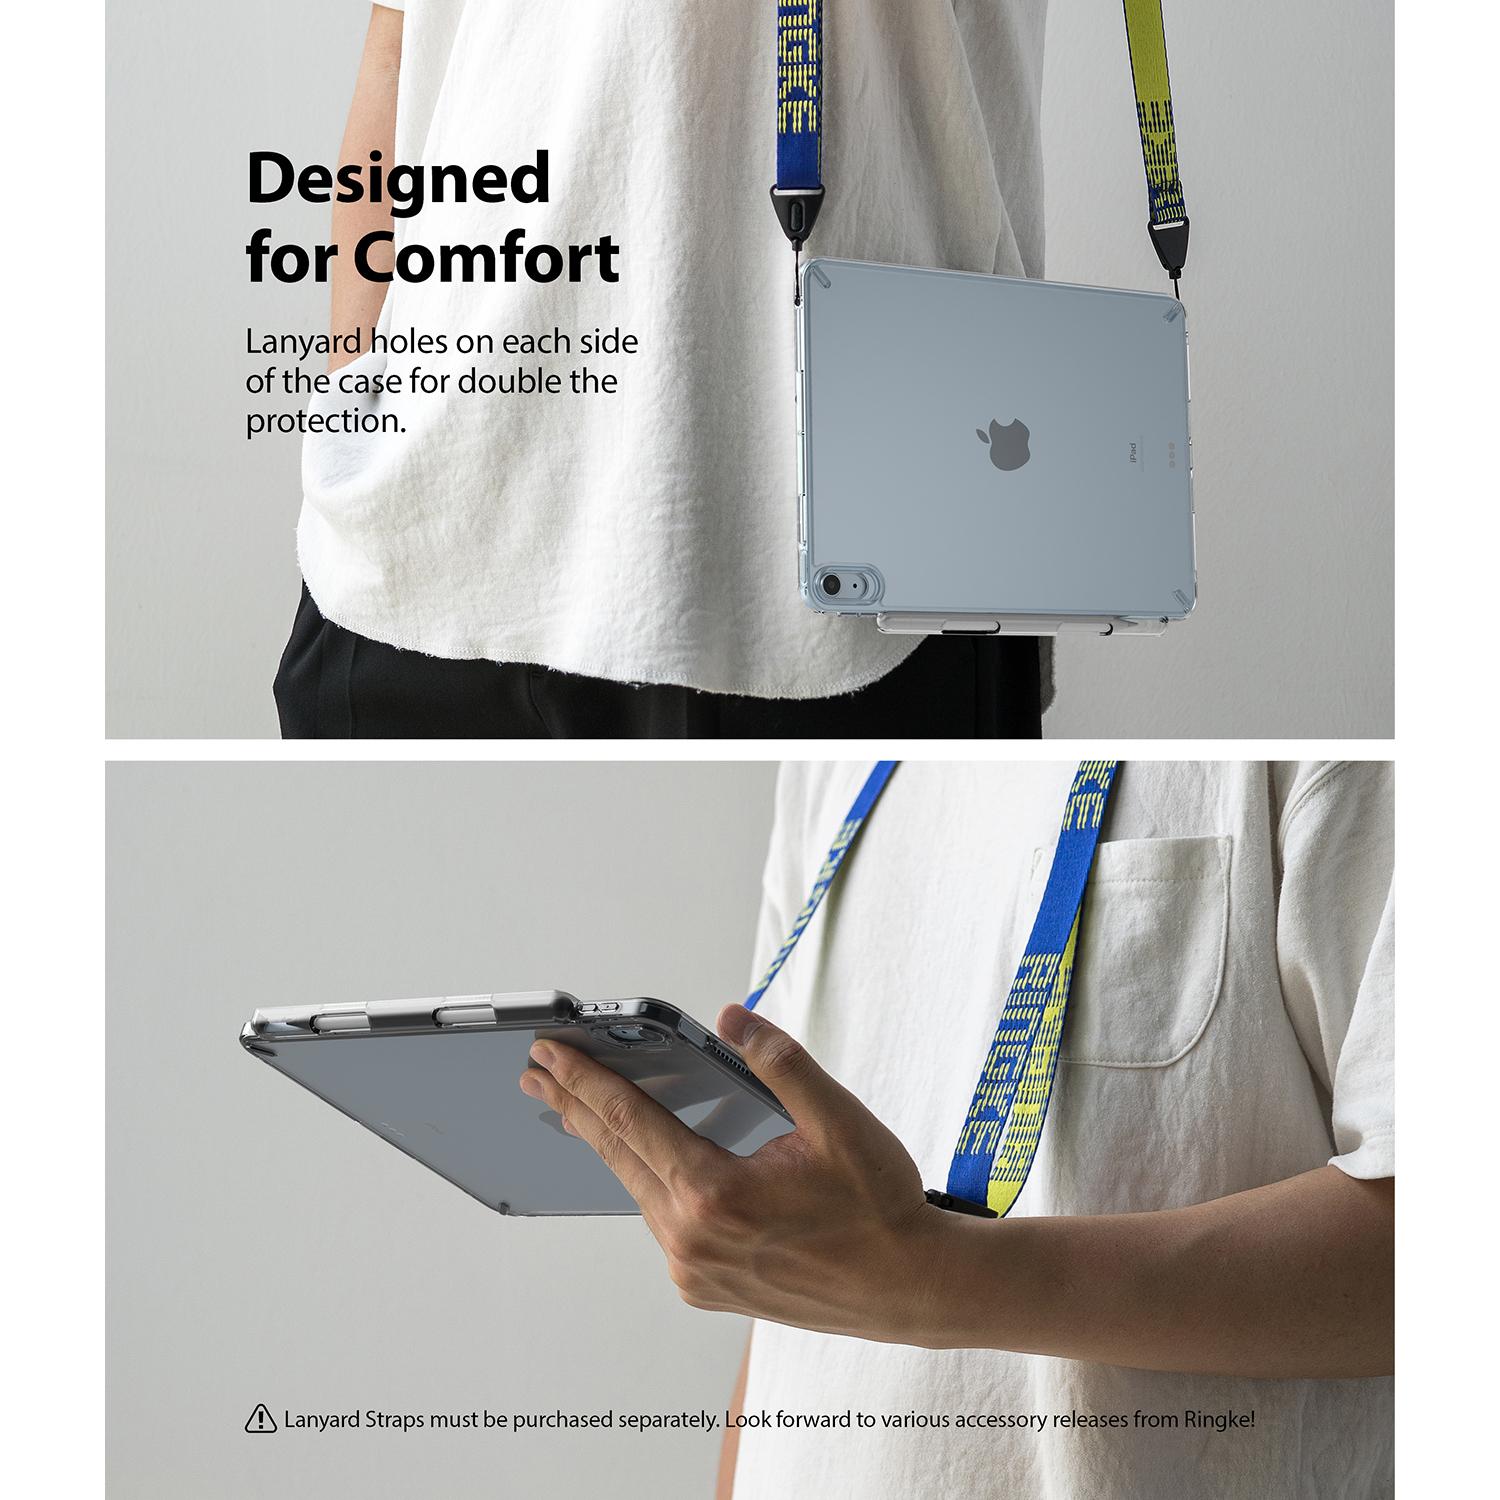 Cover Fusion iPad Air 10.9 5th Gen (2022) Clear